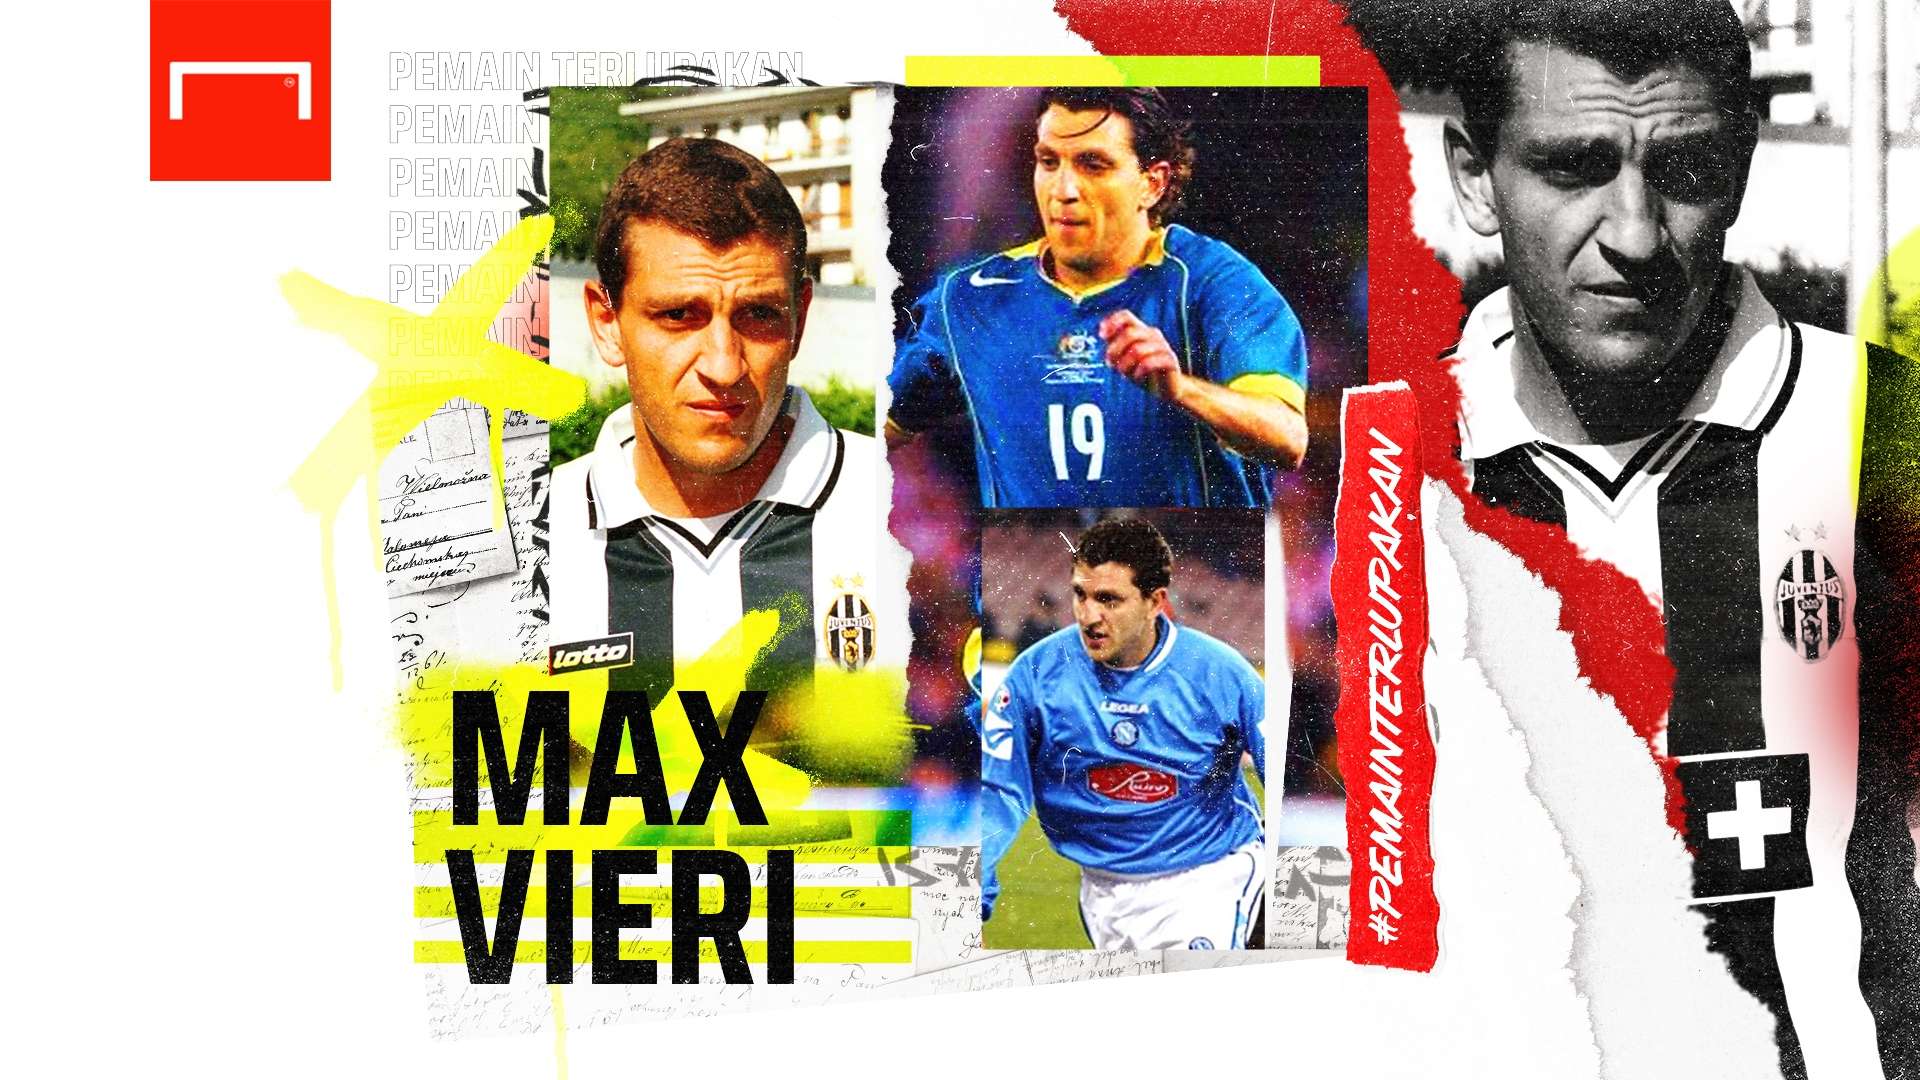 Massimiliano Vieri - Pemain Terlupakan